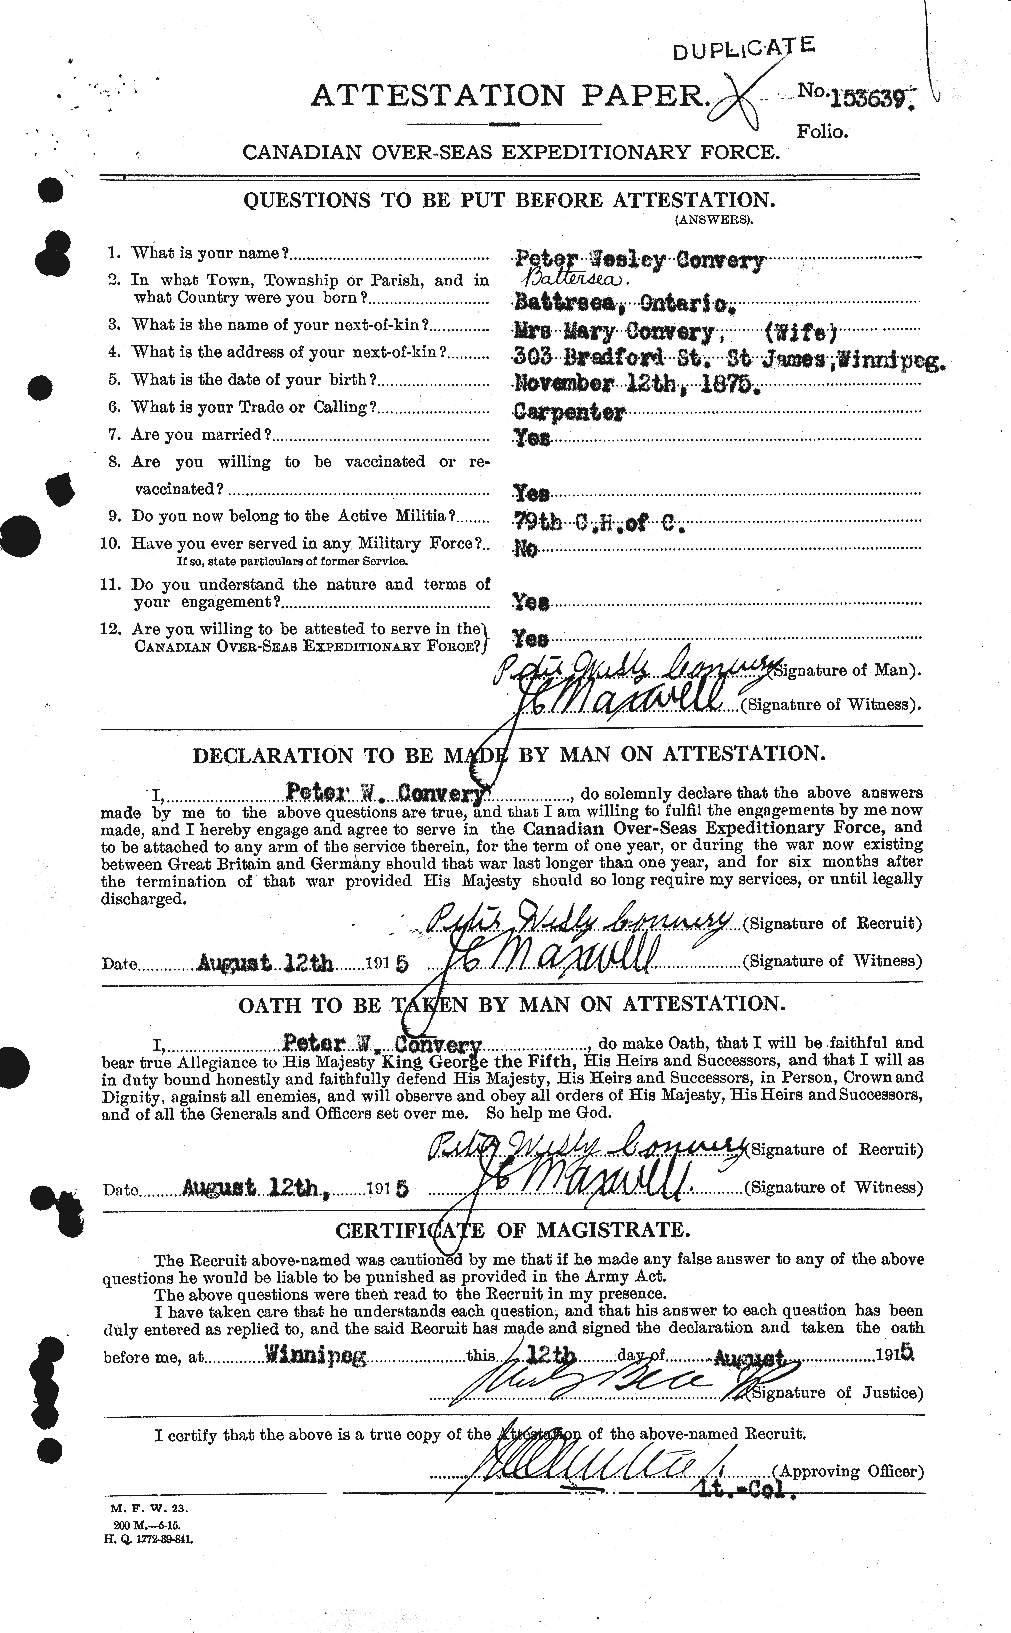 Dossiers du Personnel de la Première Guerre mondiale - CEC 073533a